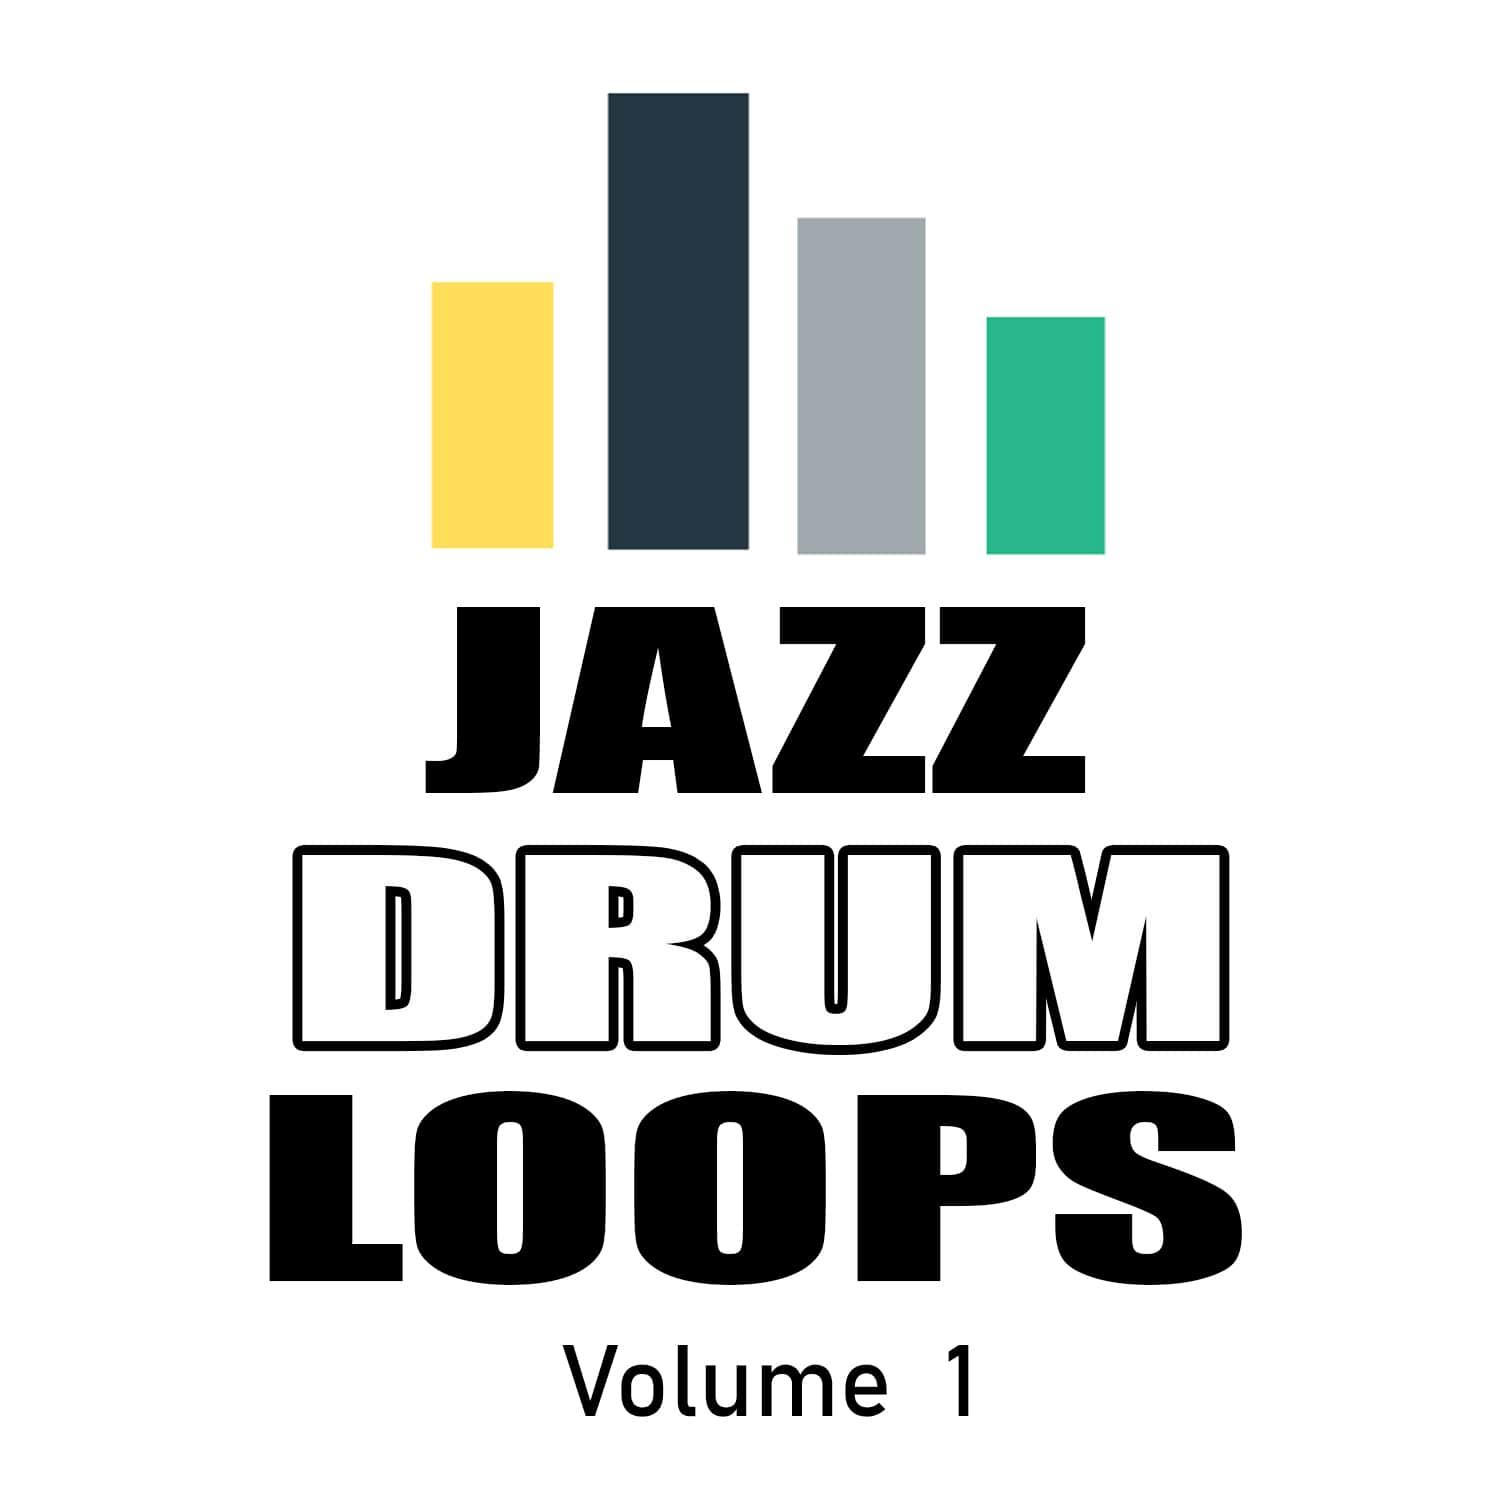 Jazz drum loops logo